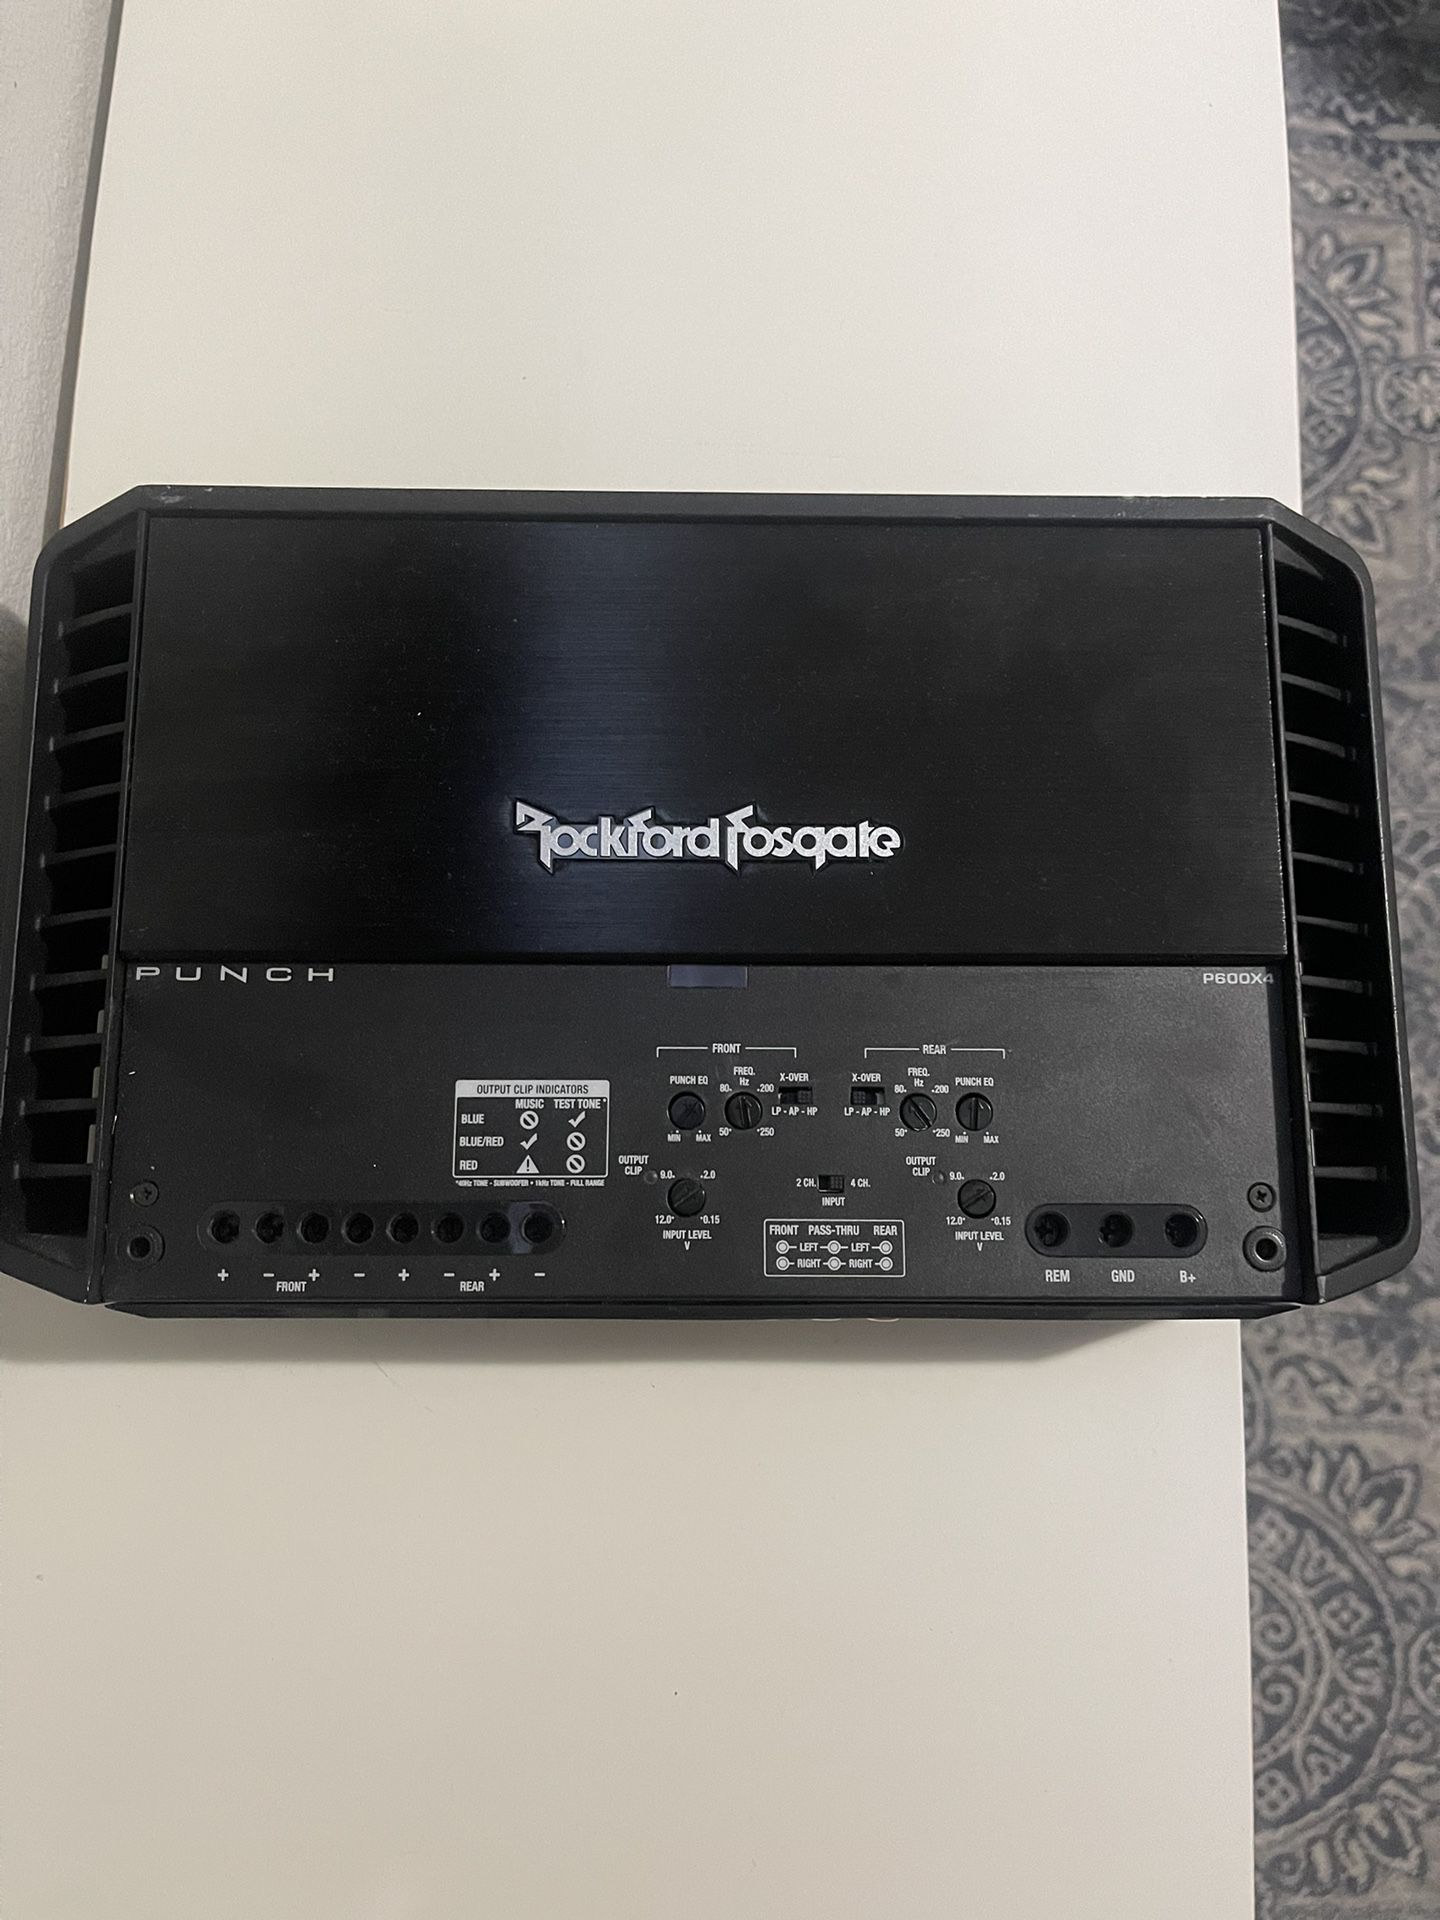 Rockford fosgate Punch 600x4 Amplifier 